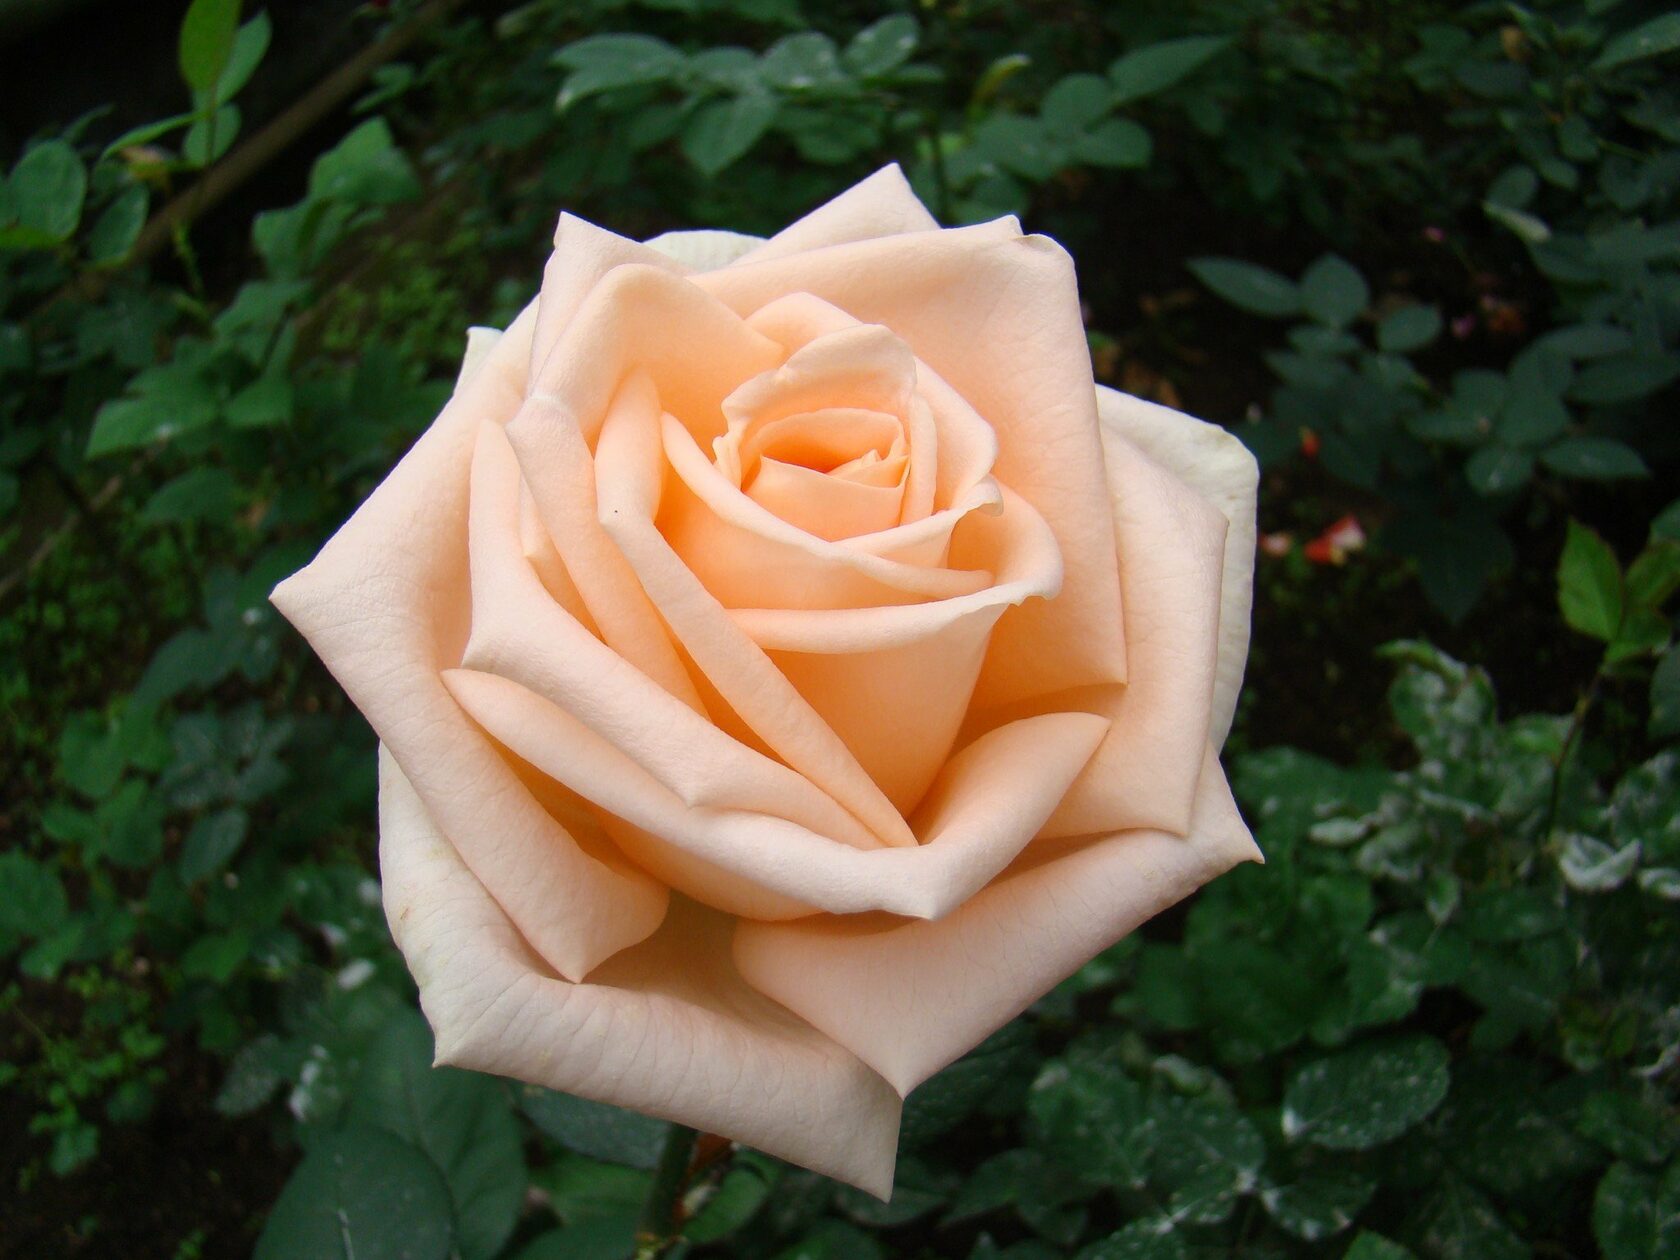 Чайно гибридная роза гейша фото описание